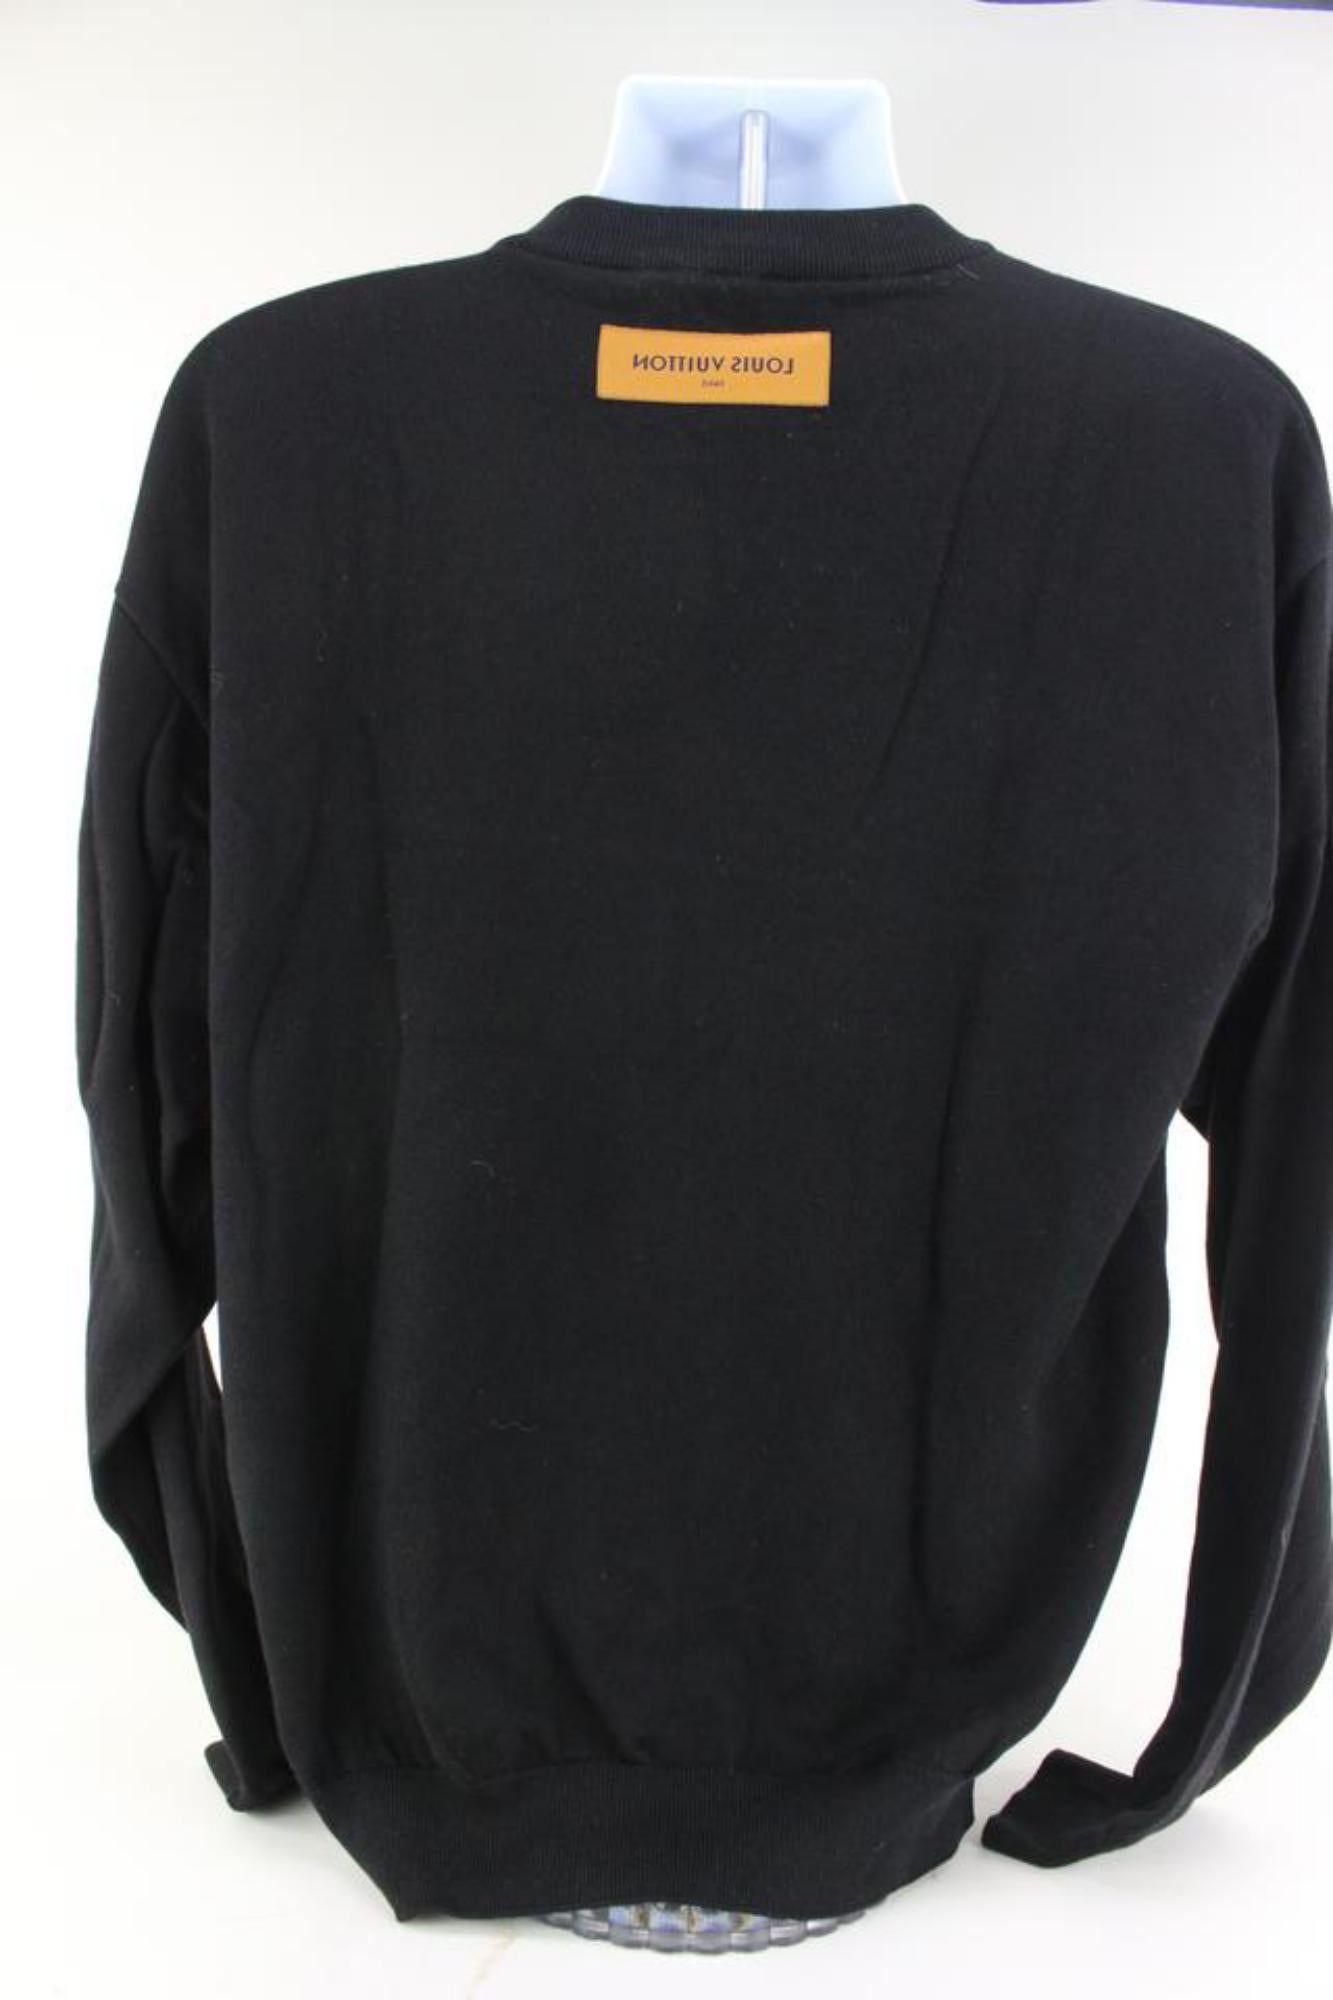 Louis Vuitton Men's Large Virgil Abloh Black Upsidedown Label Sweater 23lv617s 7